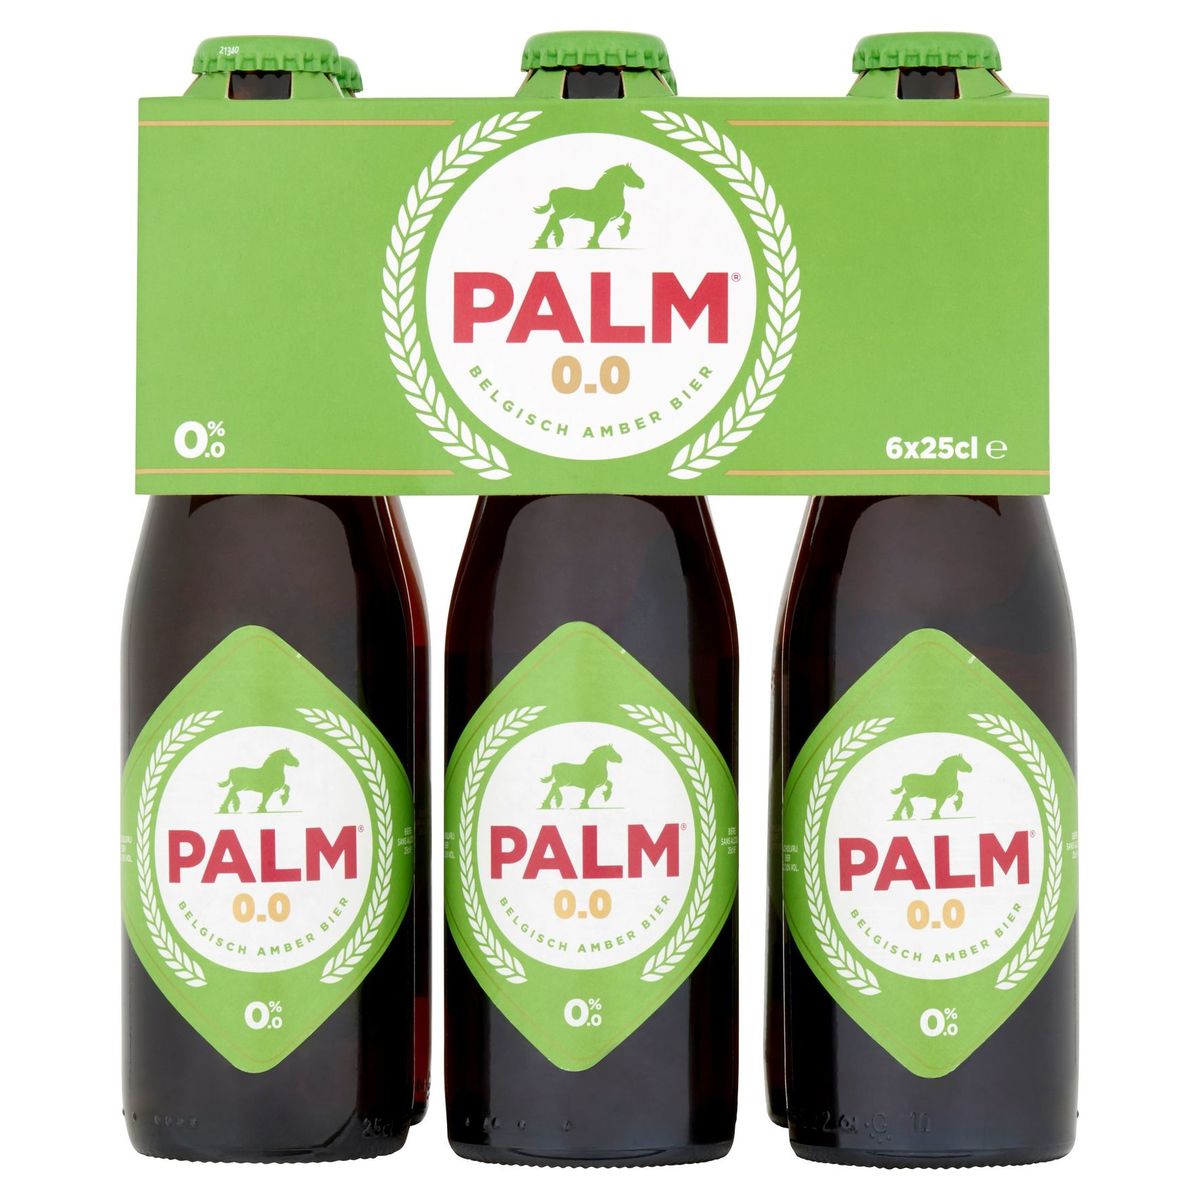 Palm 0.0 Belgisch Amber Bier Flessen 6 x 25 cl